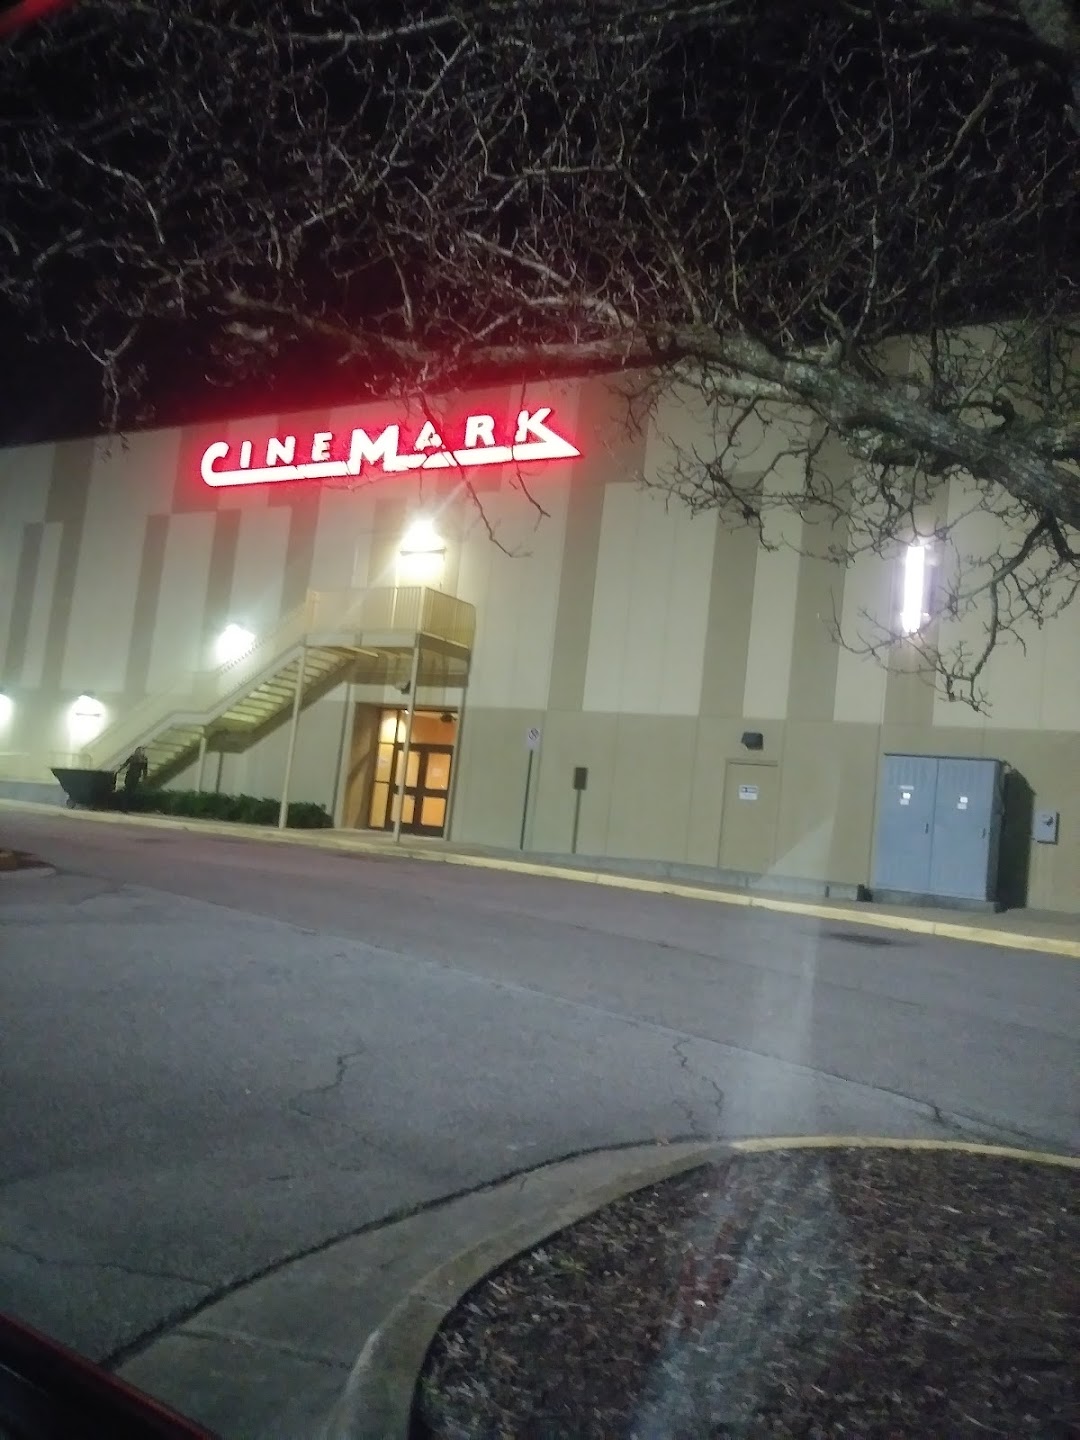 Cinemark cinema